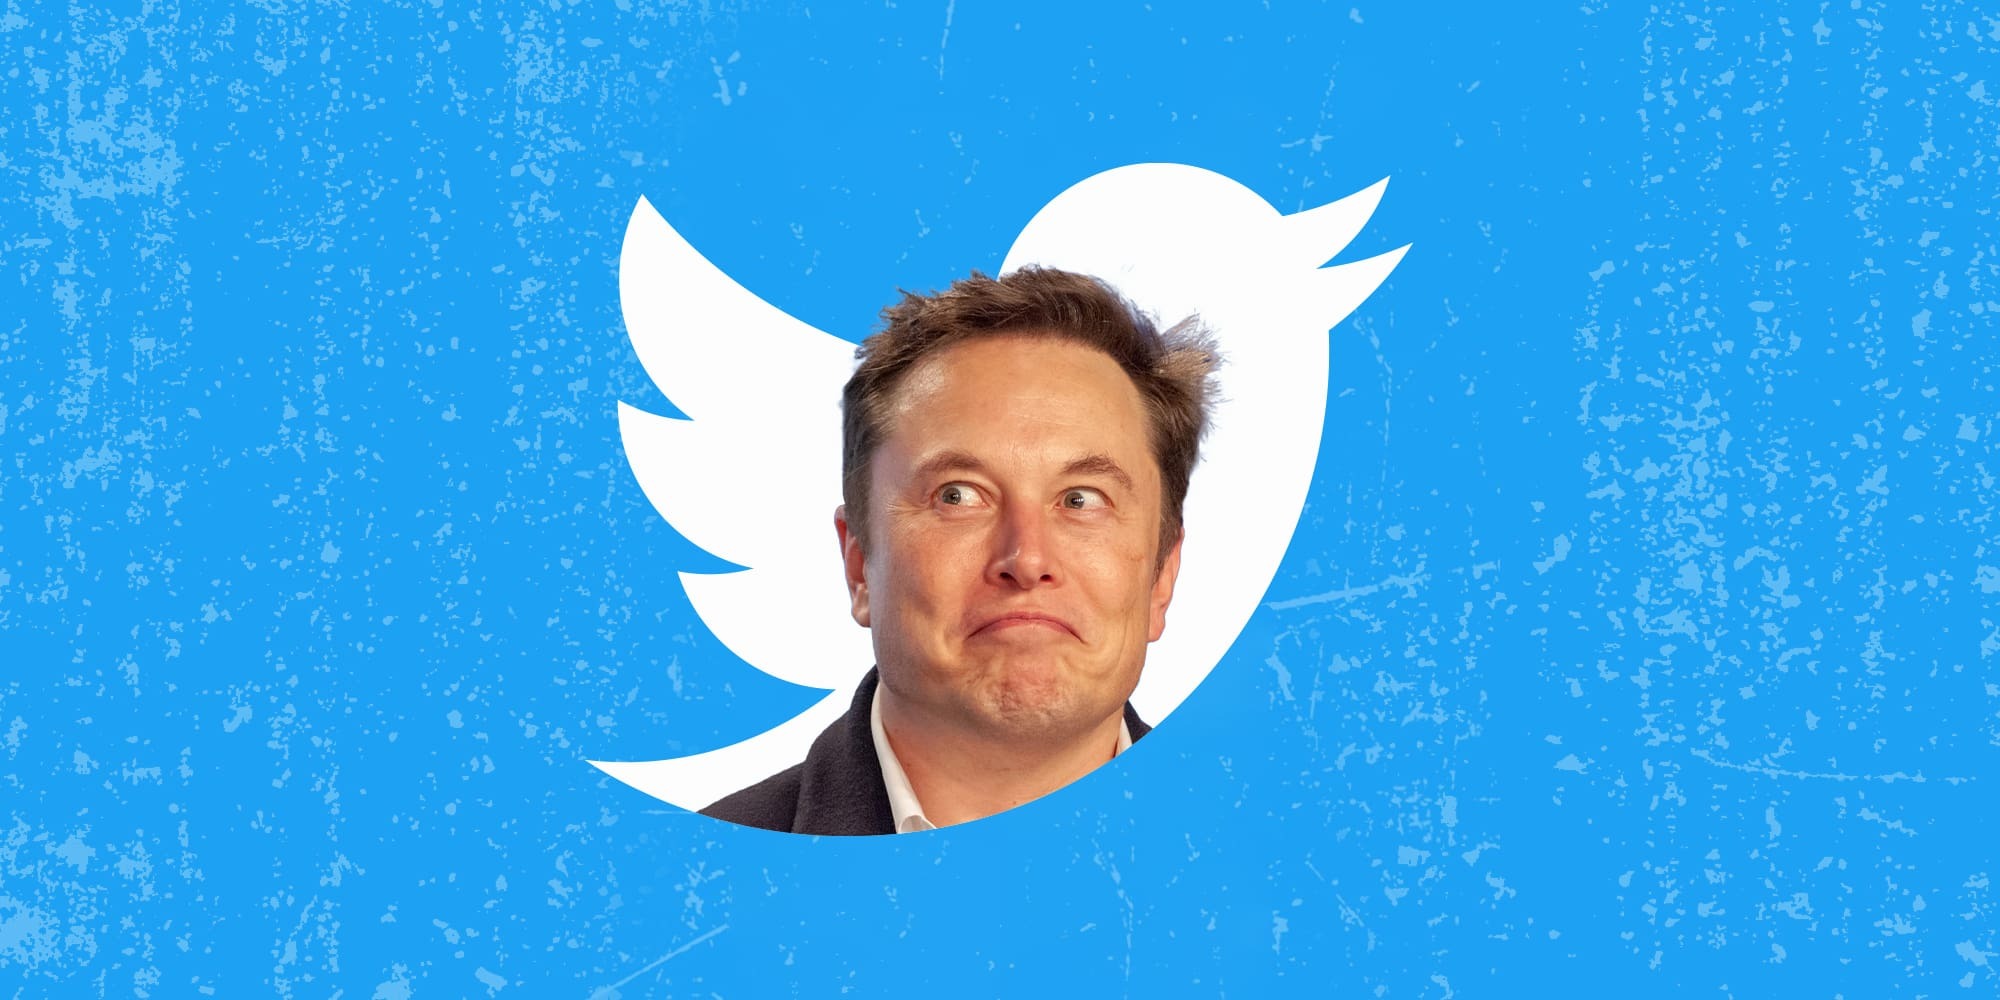 Elon Musk a sorpresa: "Mi dimetterò da amministratore delegato di Twitter"